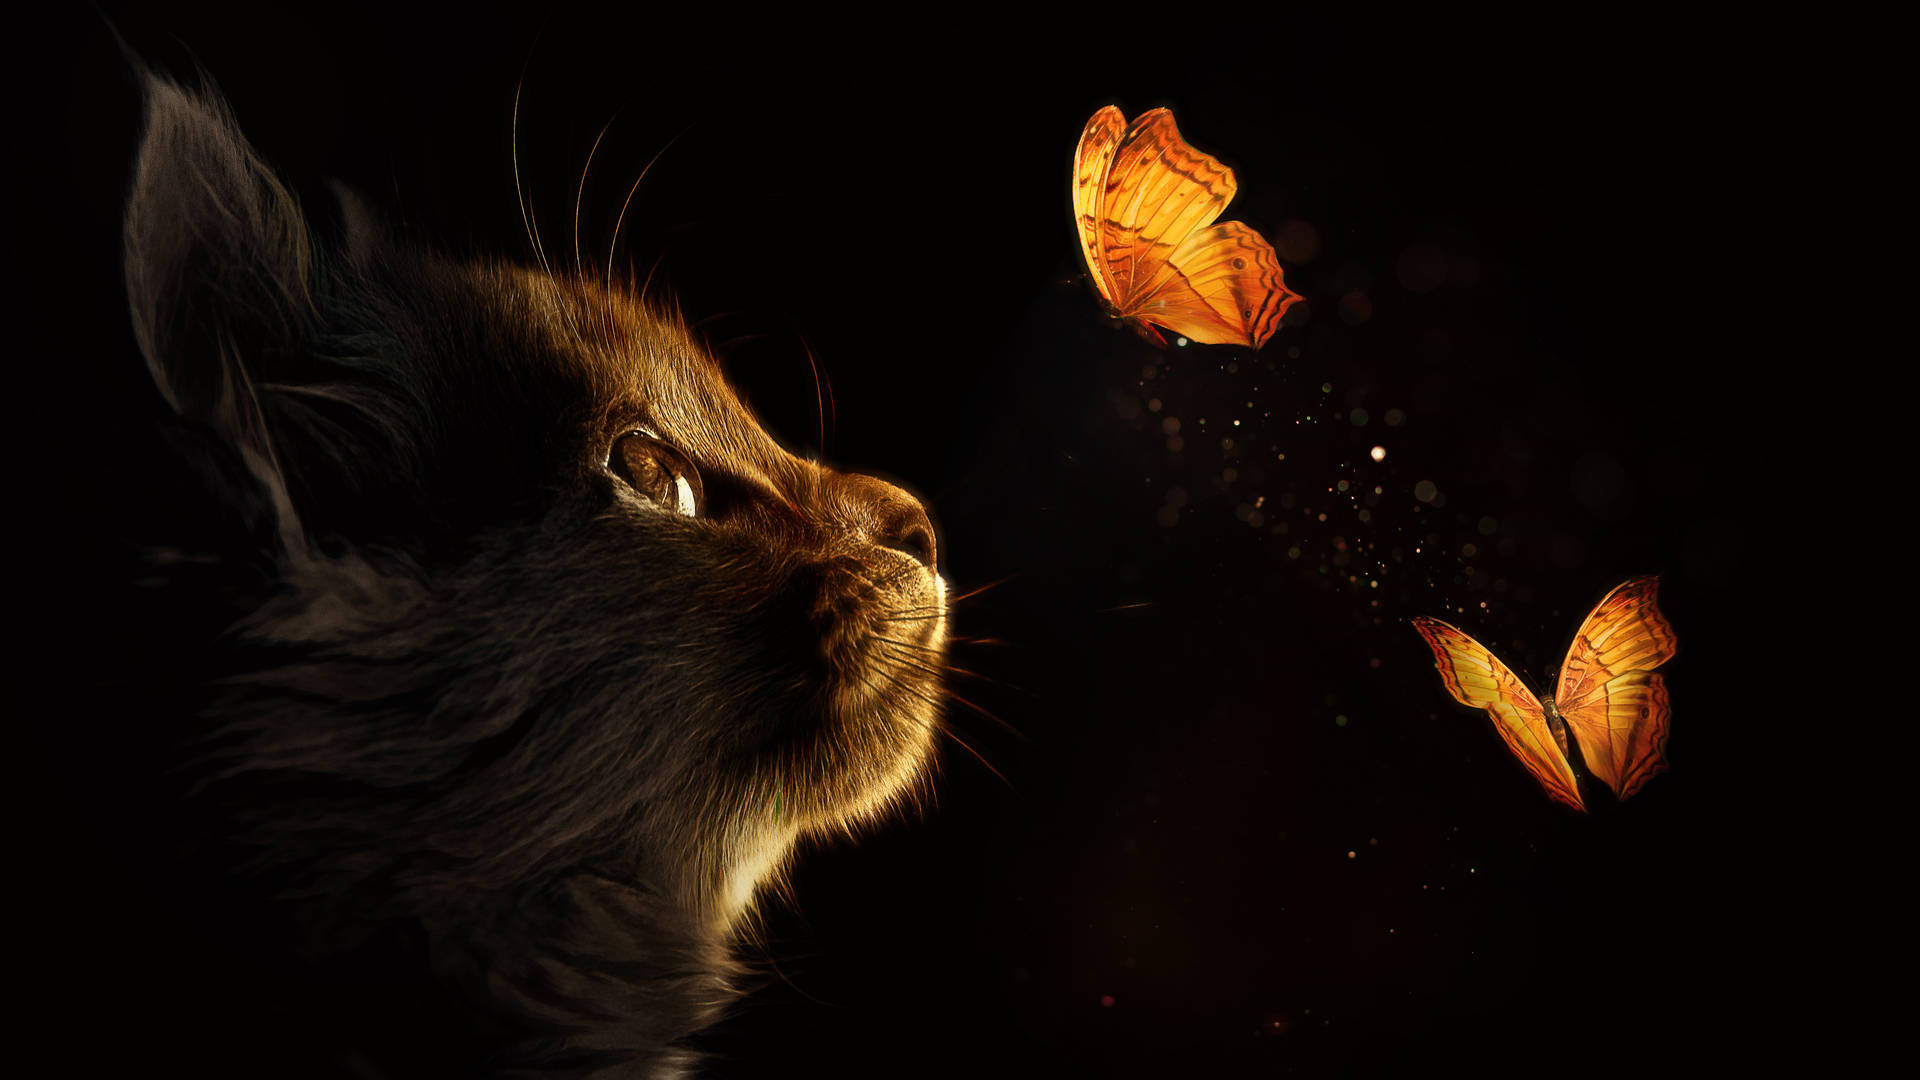 Caption: Mystical Black Art - Kitten Amidst Butterflies